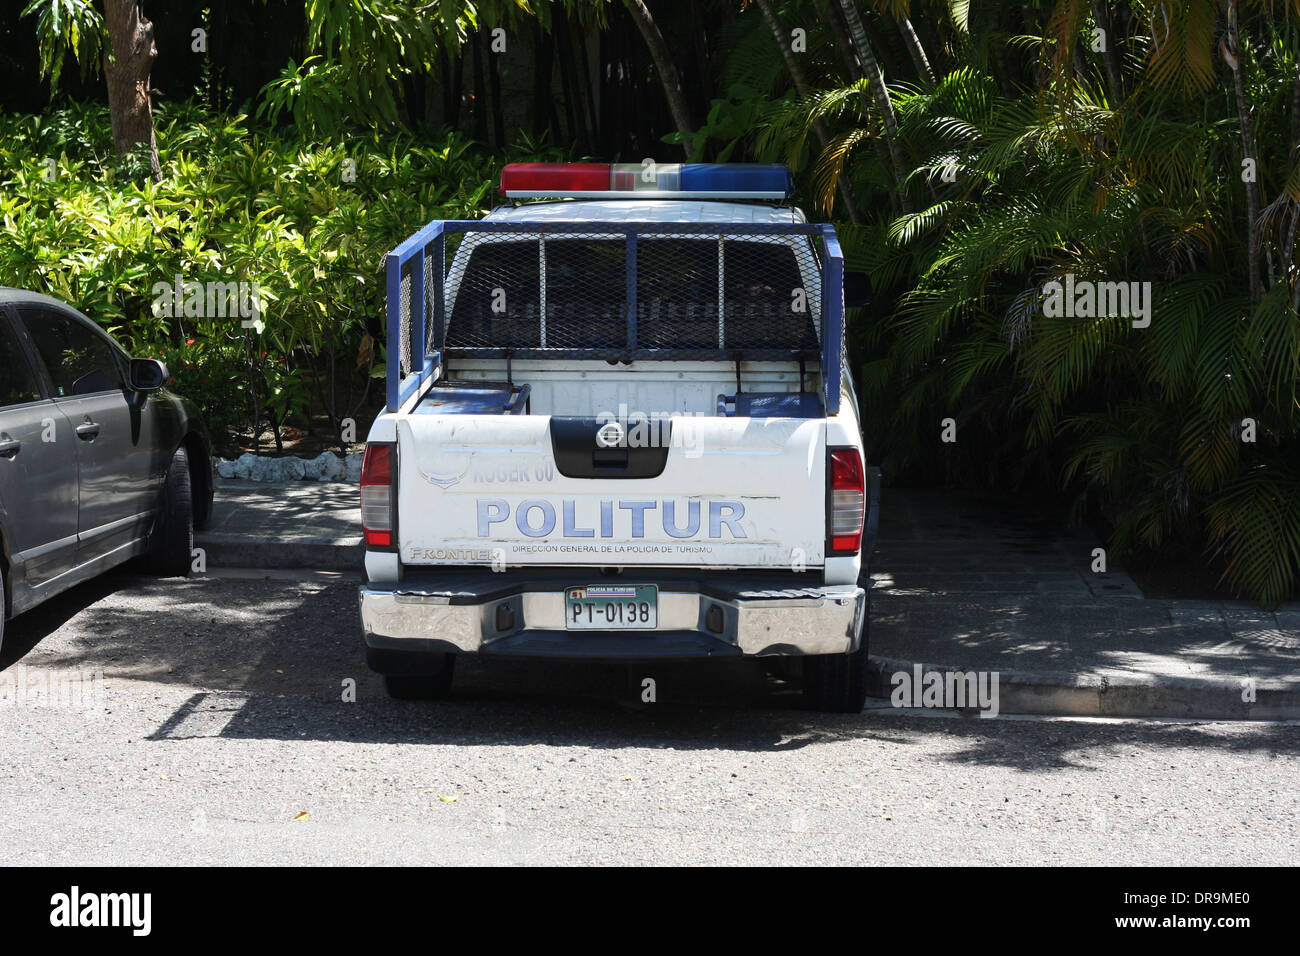 La policía de la República Dominicana camioneta Nissan Foto de stock